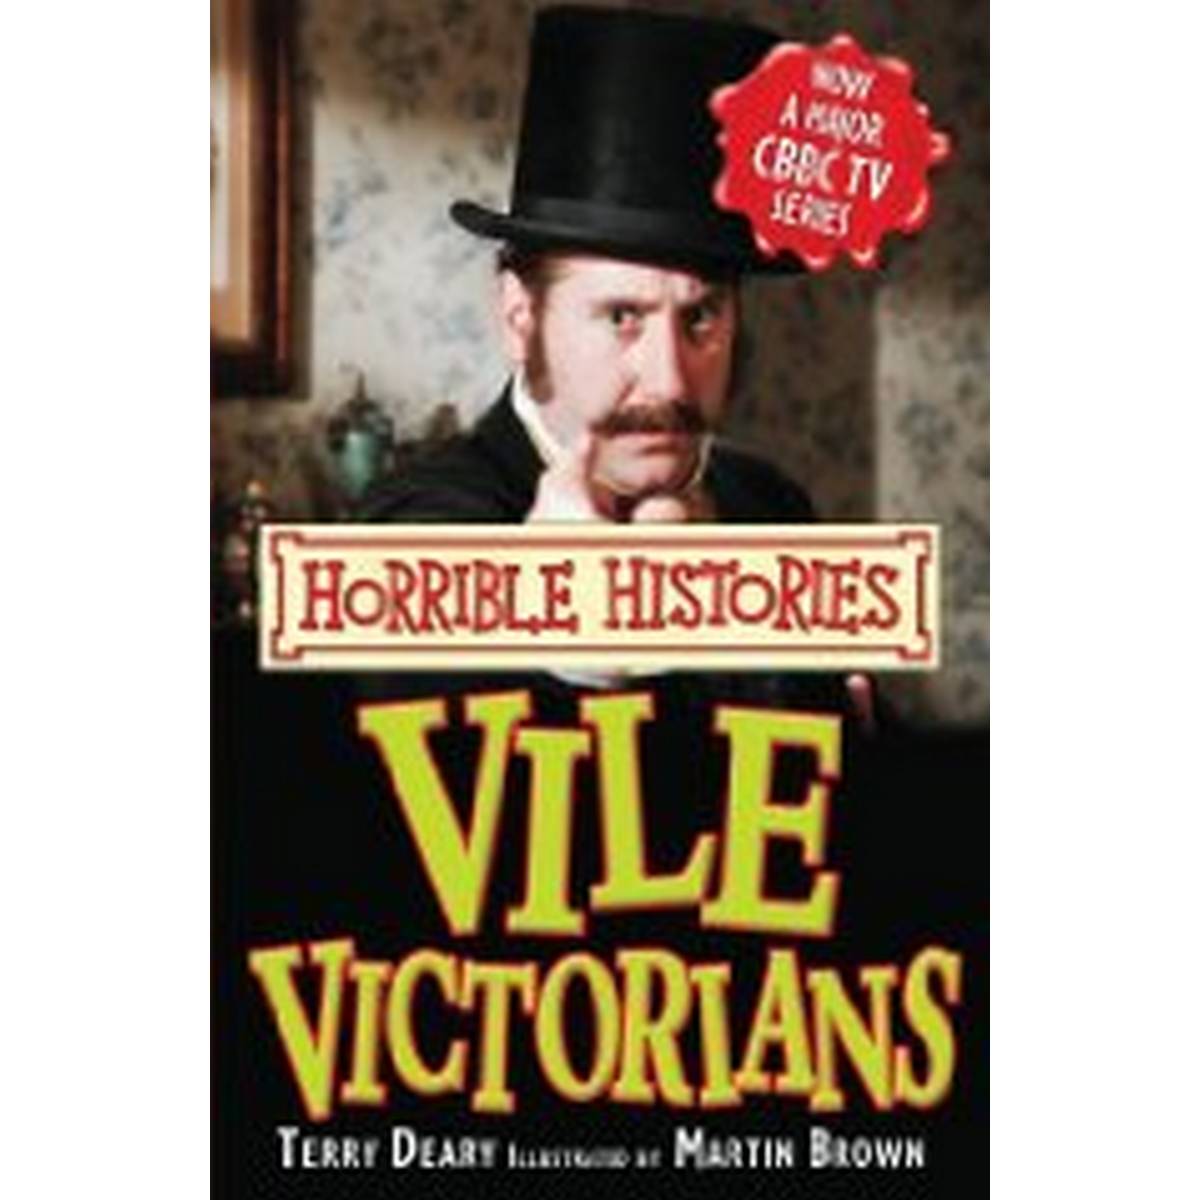 Vile Victorians (Horrible Histories)